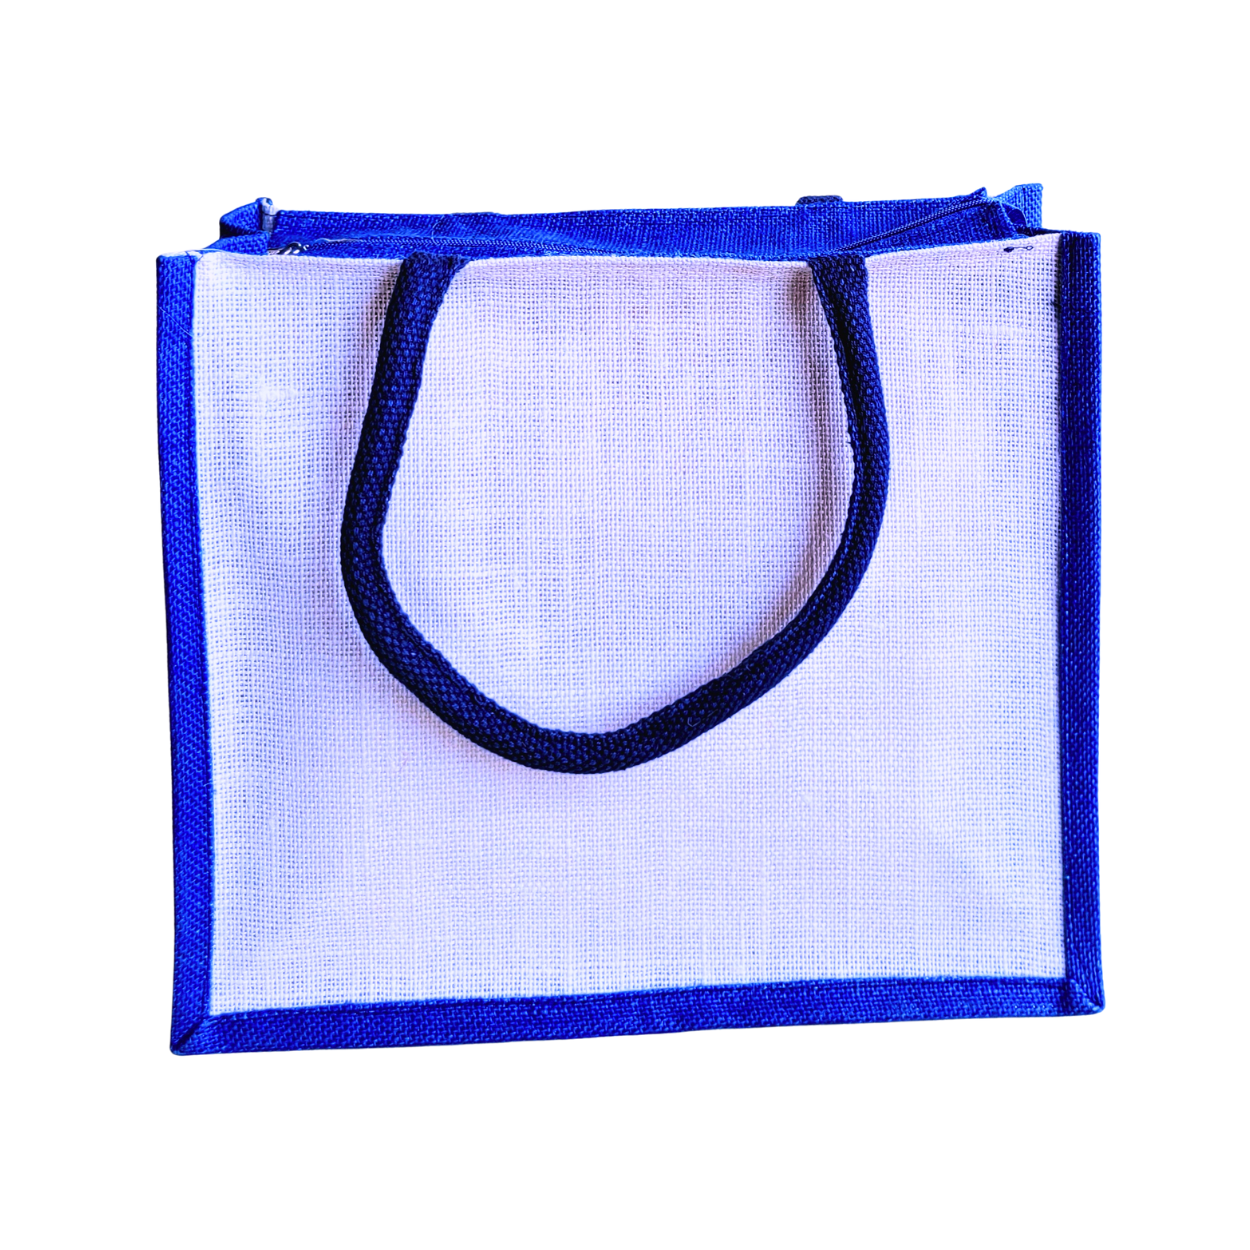 Printed Jute Shopping Bag Yoga Pose - Royal Blue Large